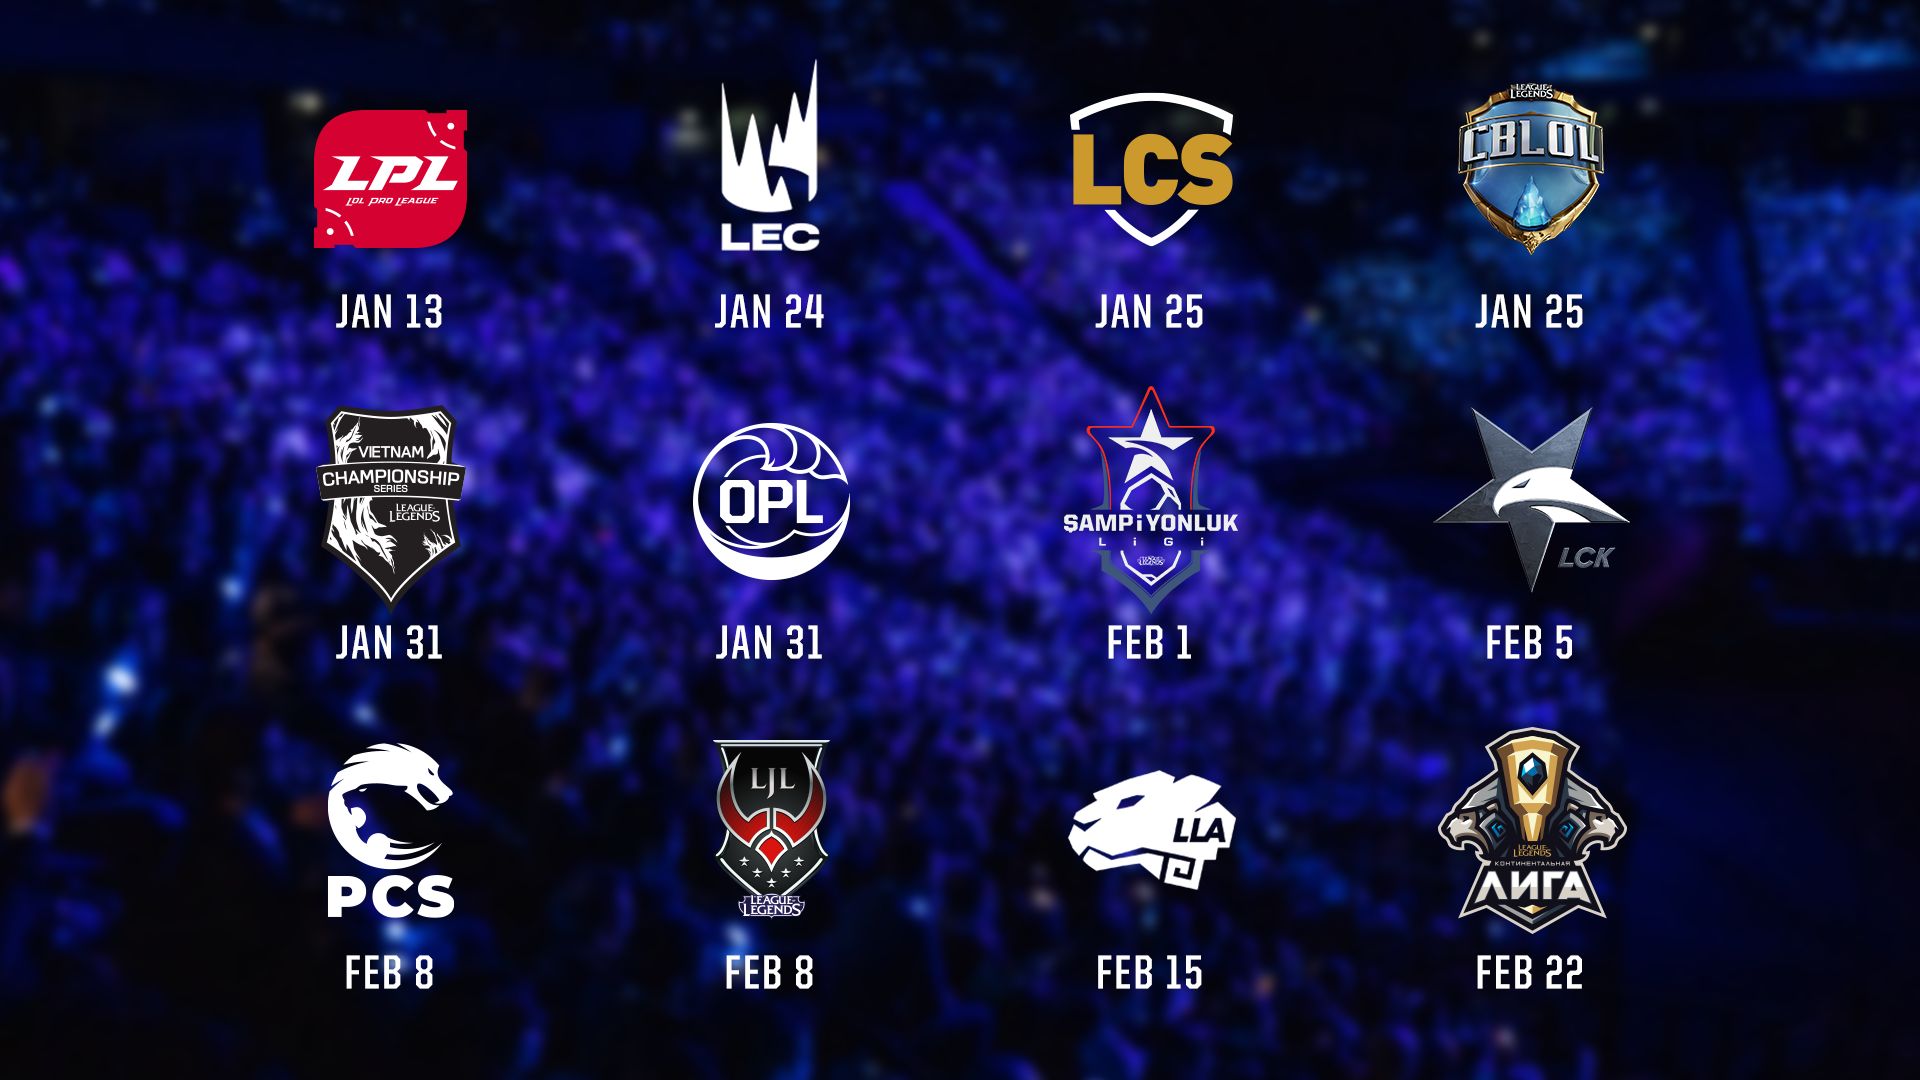 Даты начала сезона в региональных лигах
Источник: Riot Games